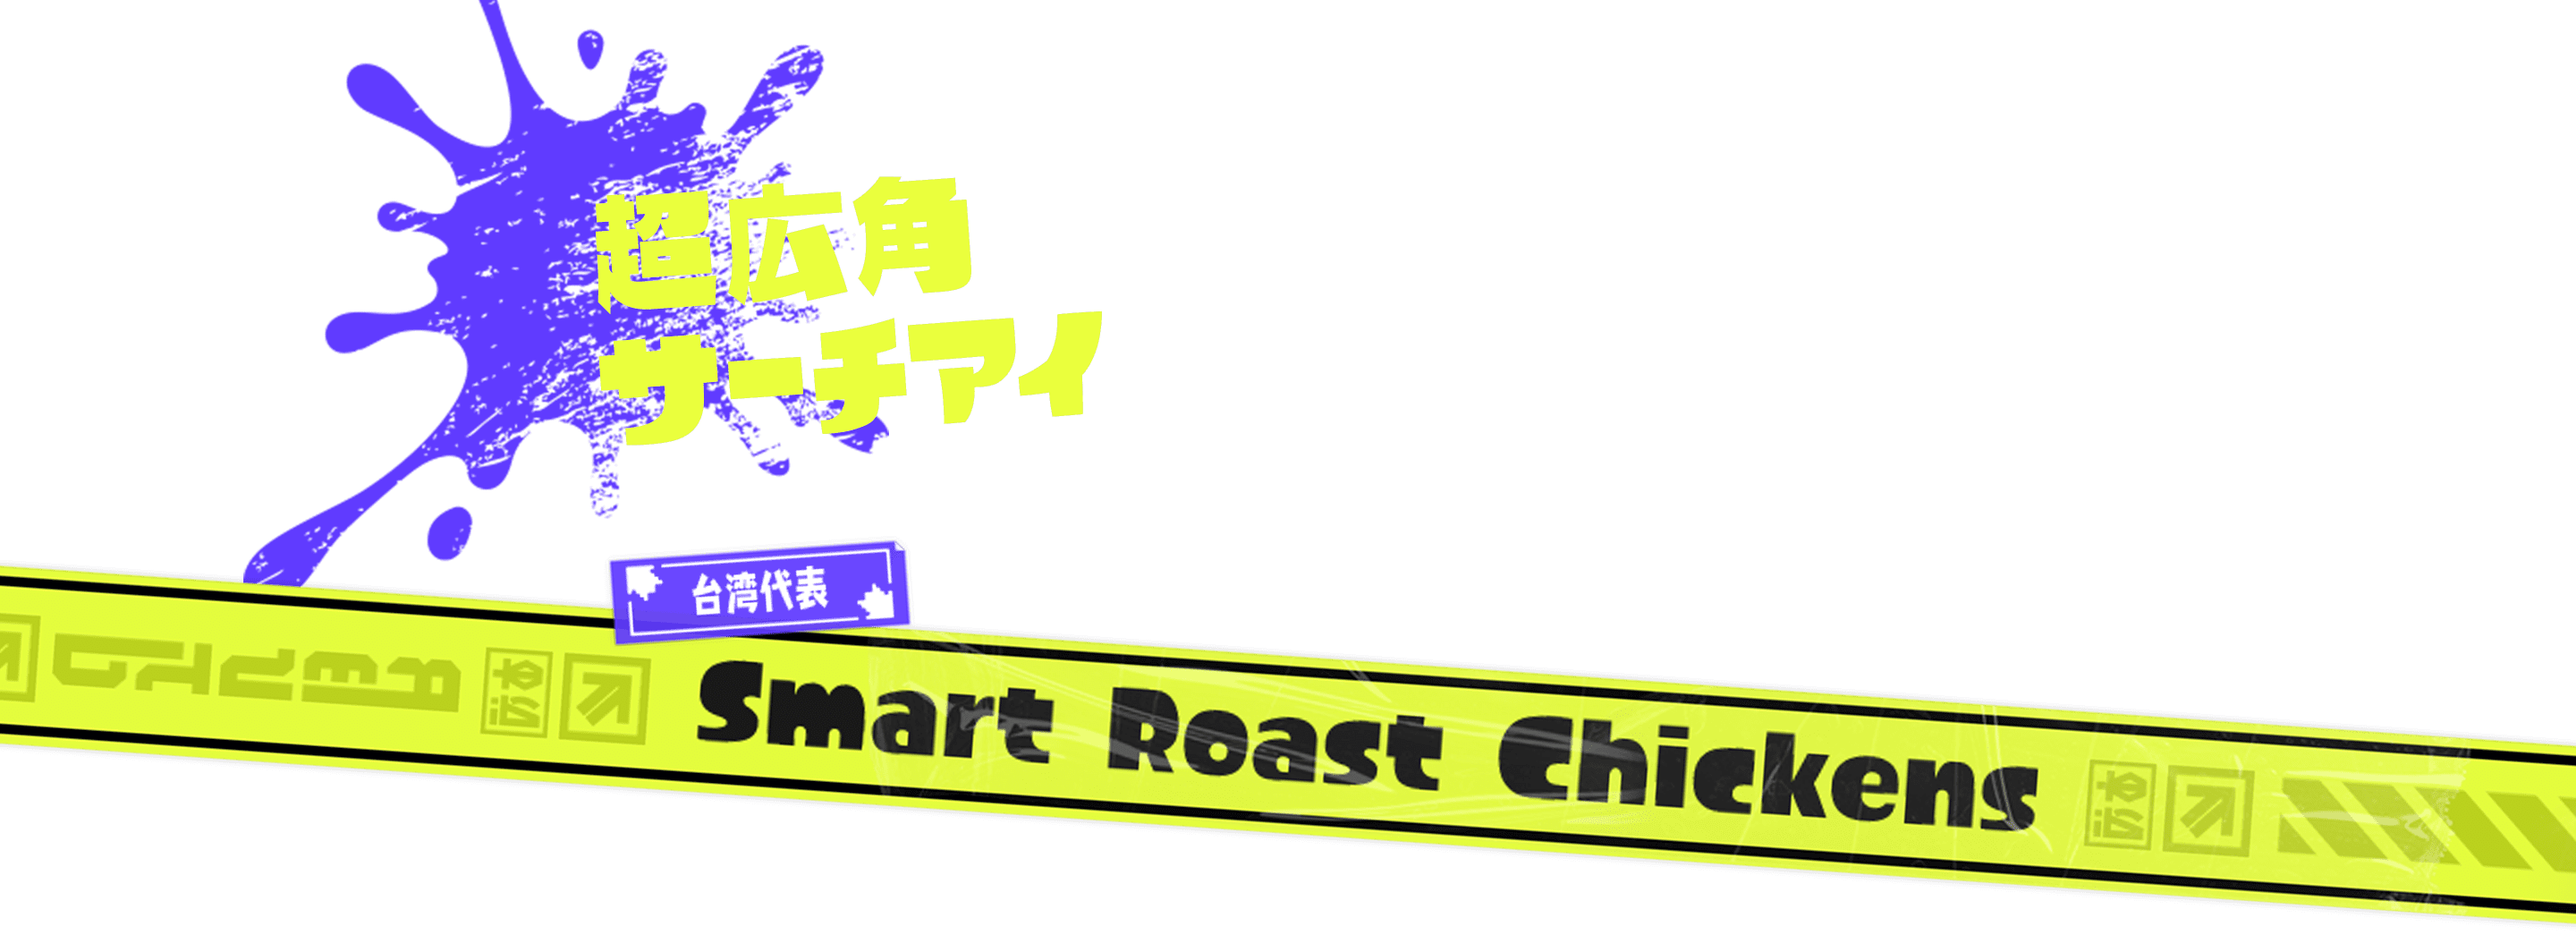 超広角サーチアイ 台湾代表 Smart Roast Chickens